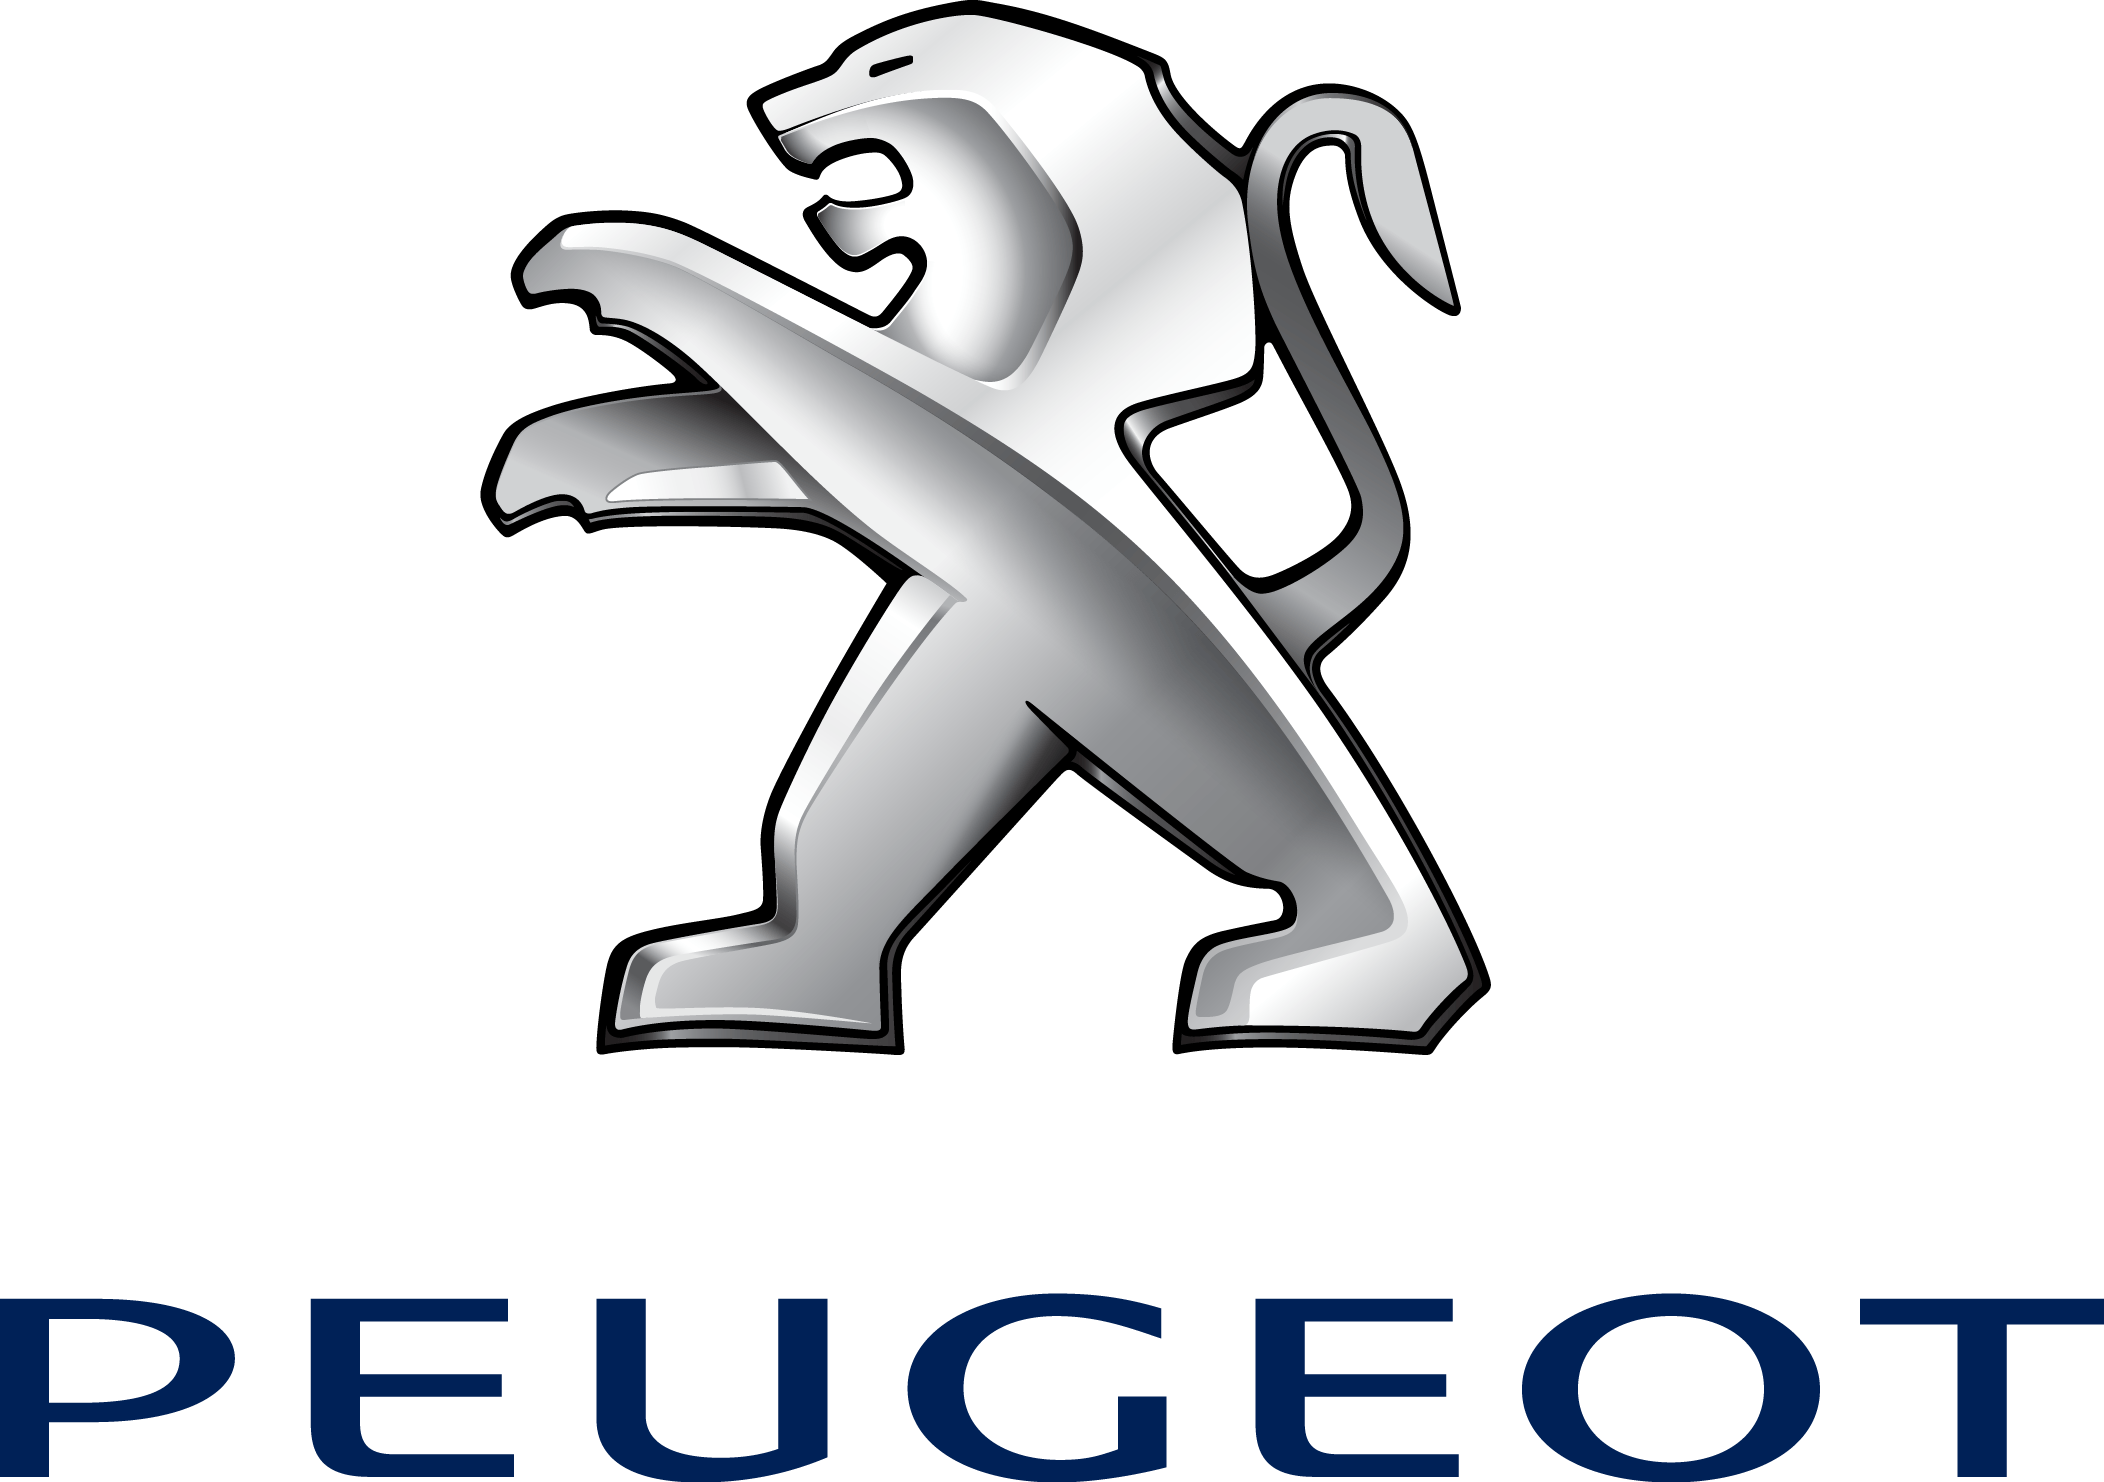 Peugeot Logo. ePin Graphic, Design Elements, Clipart